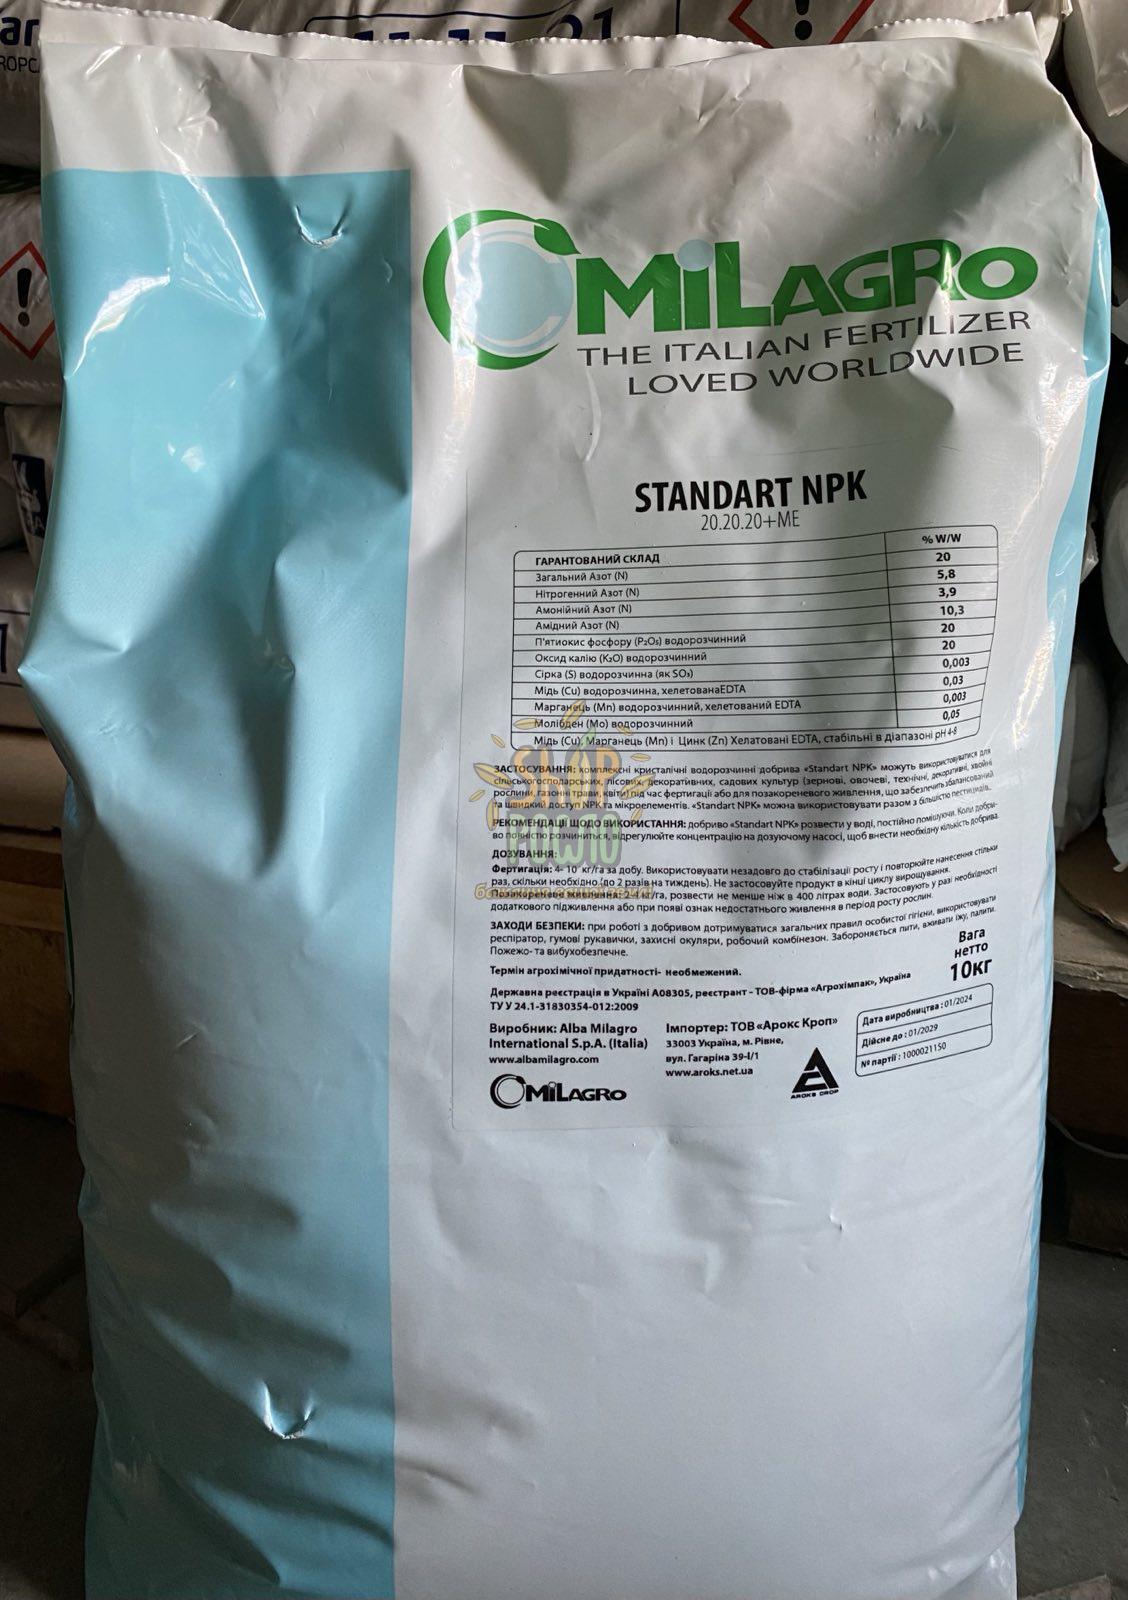 МИЛАГРО (MILAGRO) Standart NPK 20-20-20+ME, комплексное удобрение, ТМ "MiLAGRO" (Италия), 10 кг